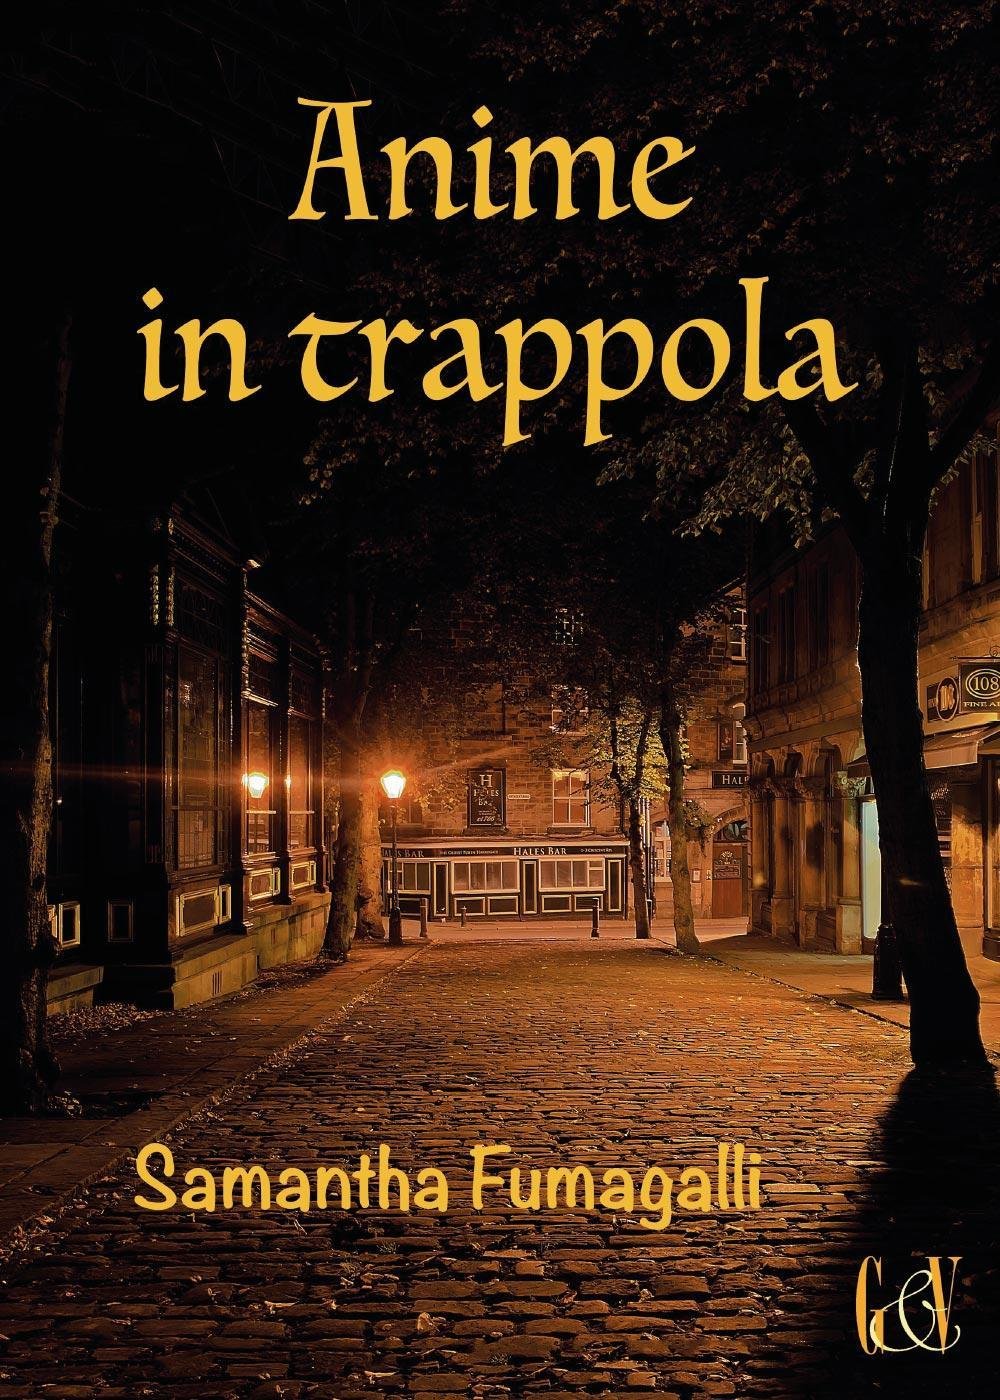 La copertina del romanzo giallo Anime in trappola, di Samantha Fumagalli